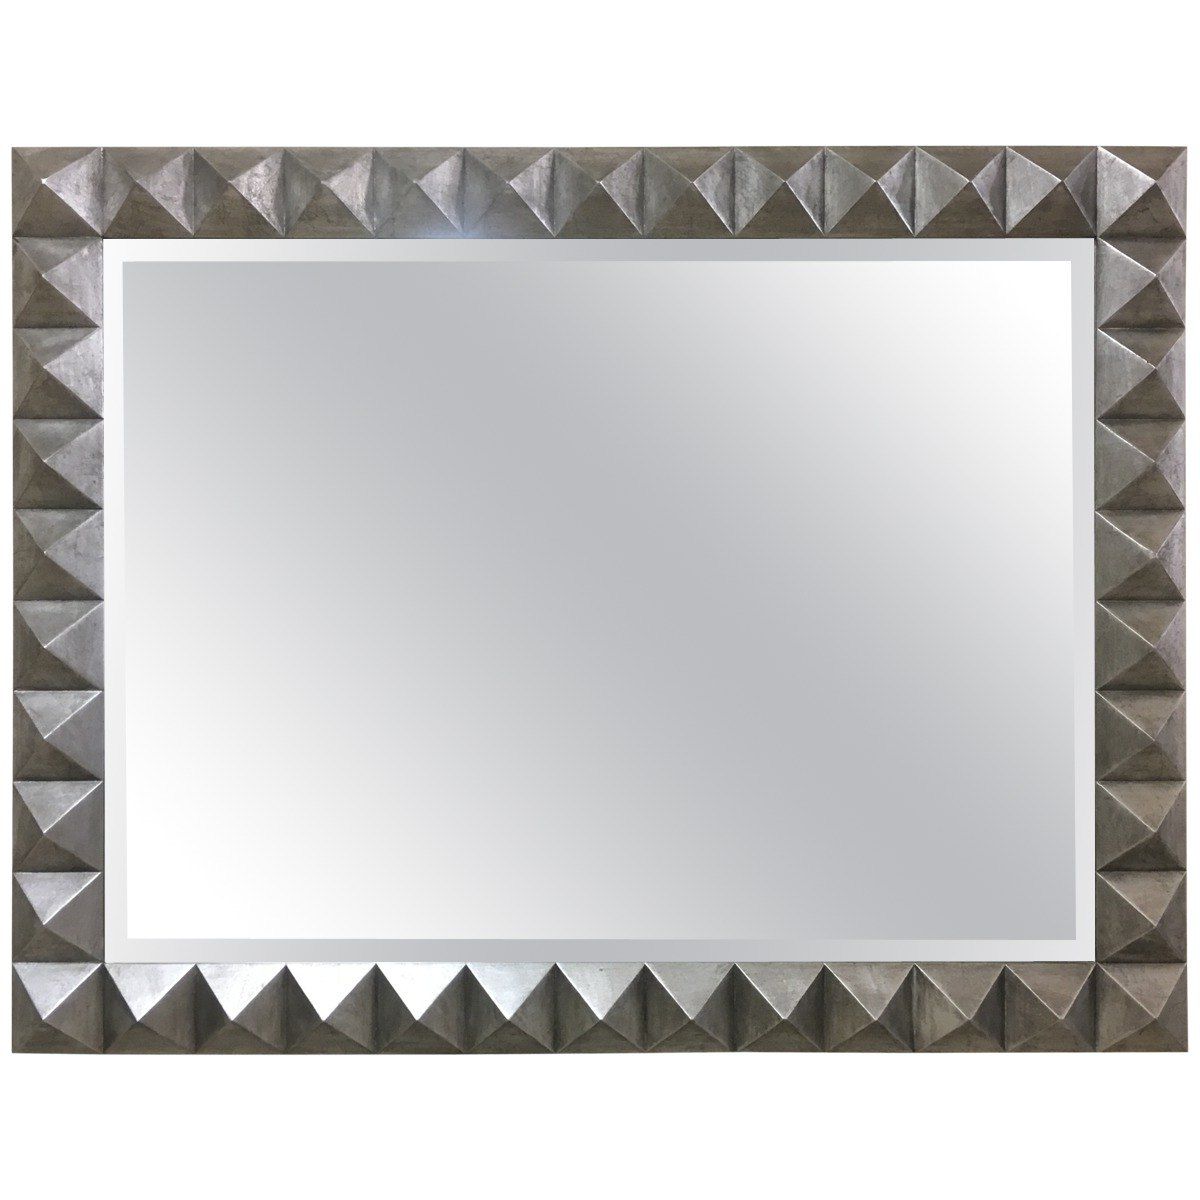 Dolomiti Silver Leaf Wall Mirror With Regard To 2019 Silver Leaf Wall Mirrors (View 19 of 20)